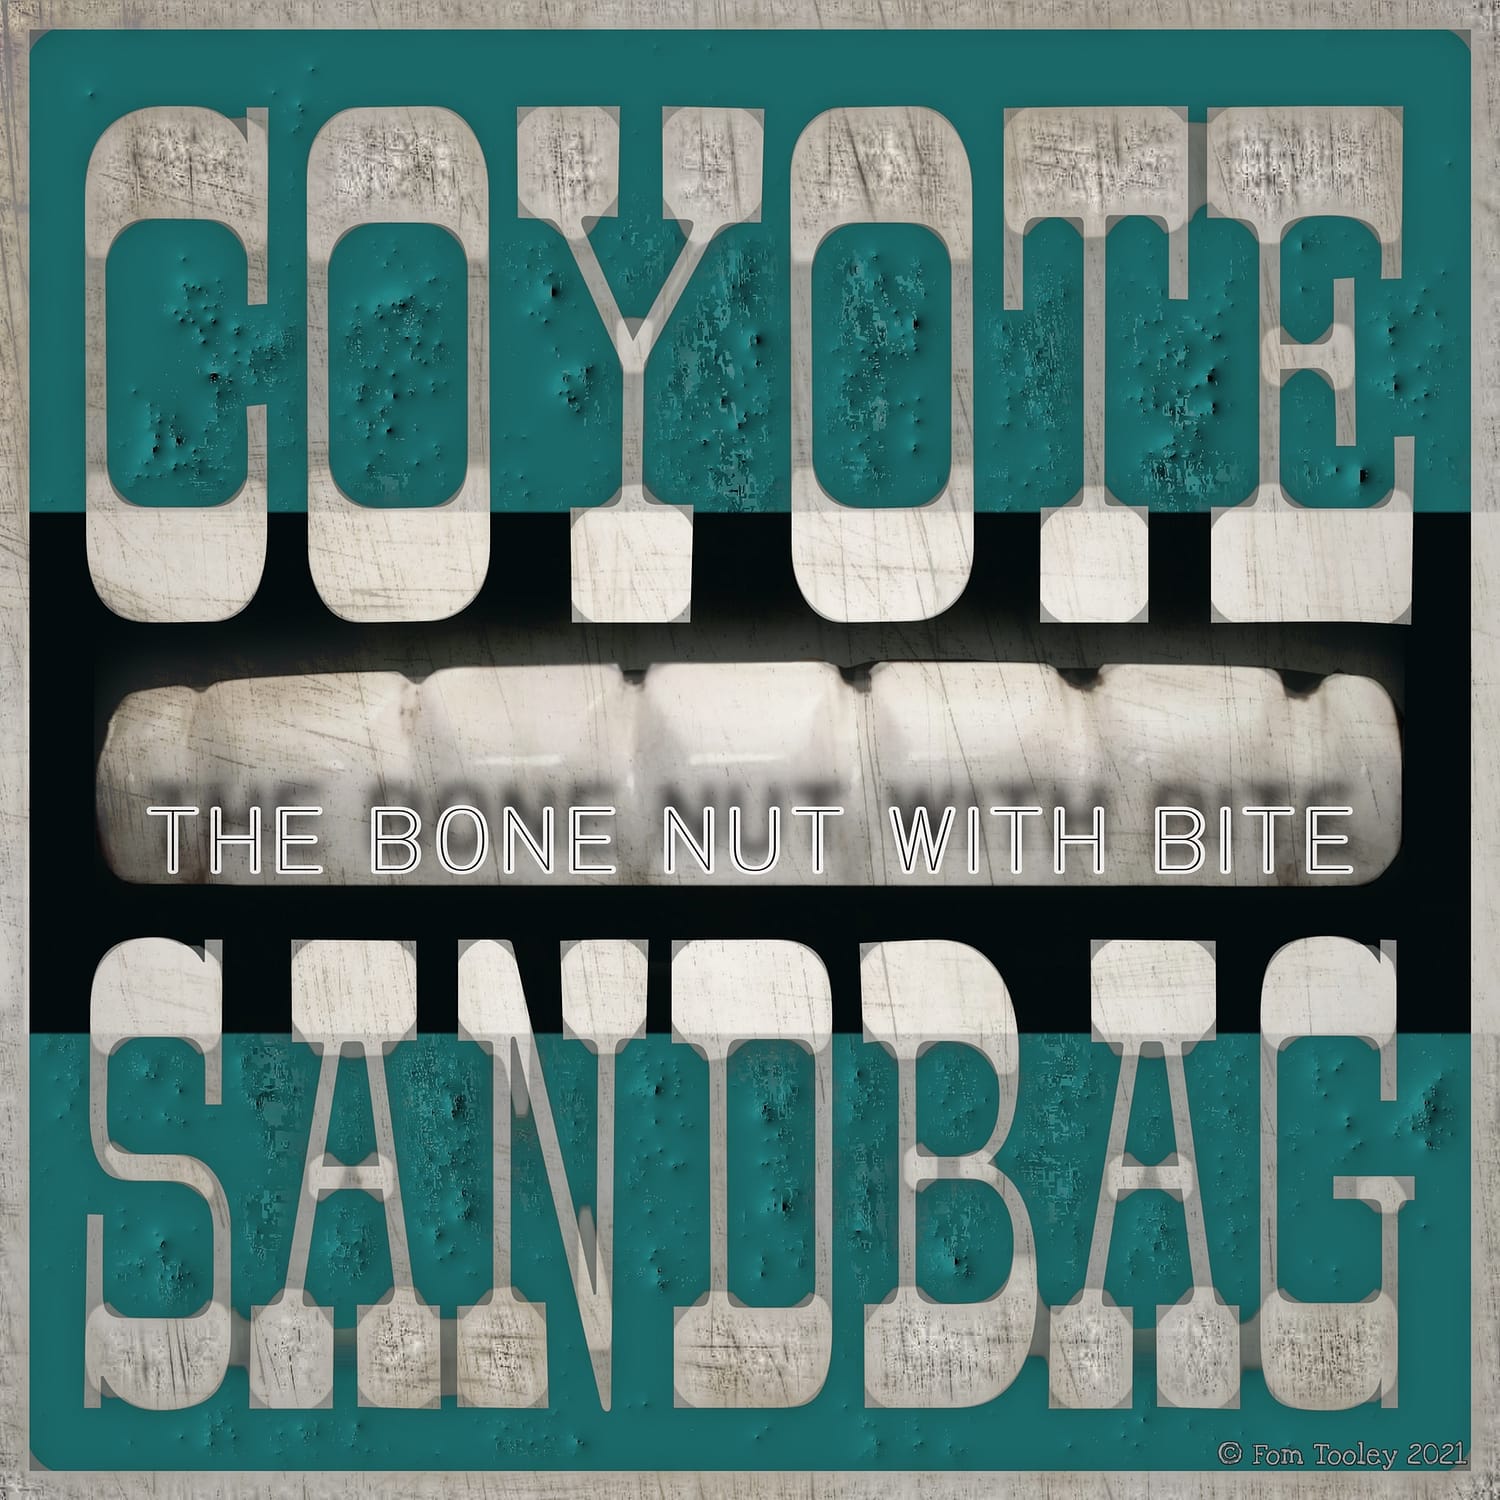 coyote sandbag, THE COYOTE SANDBAG, fom tooley